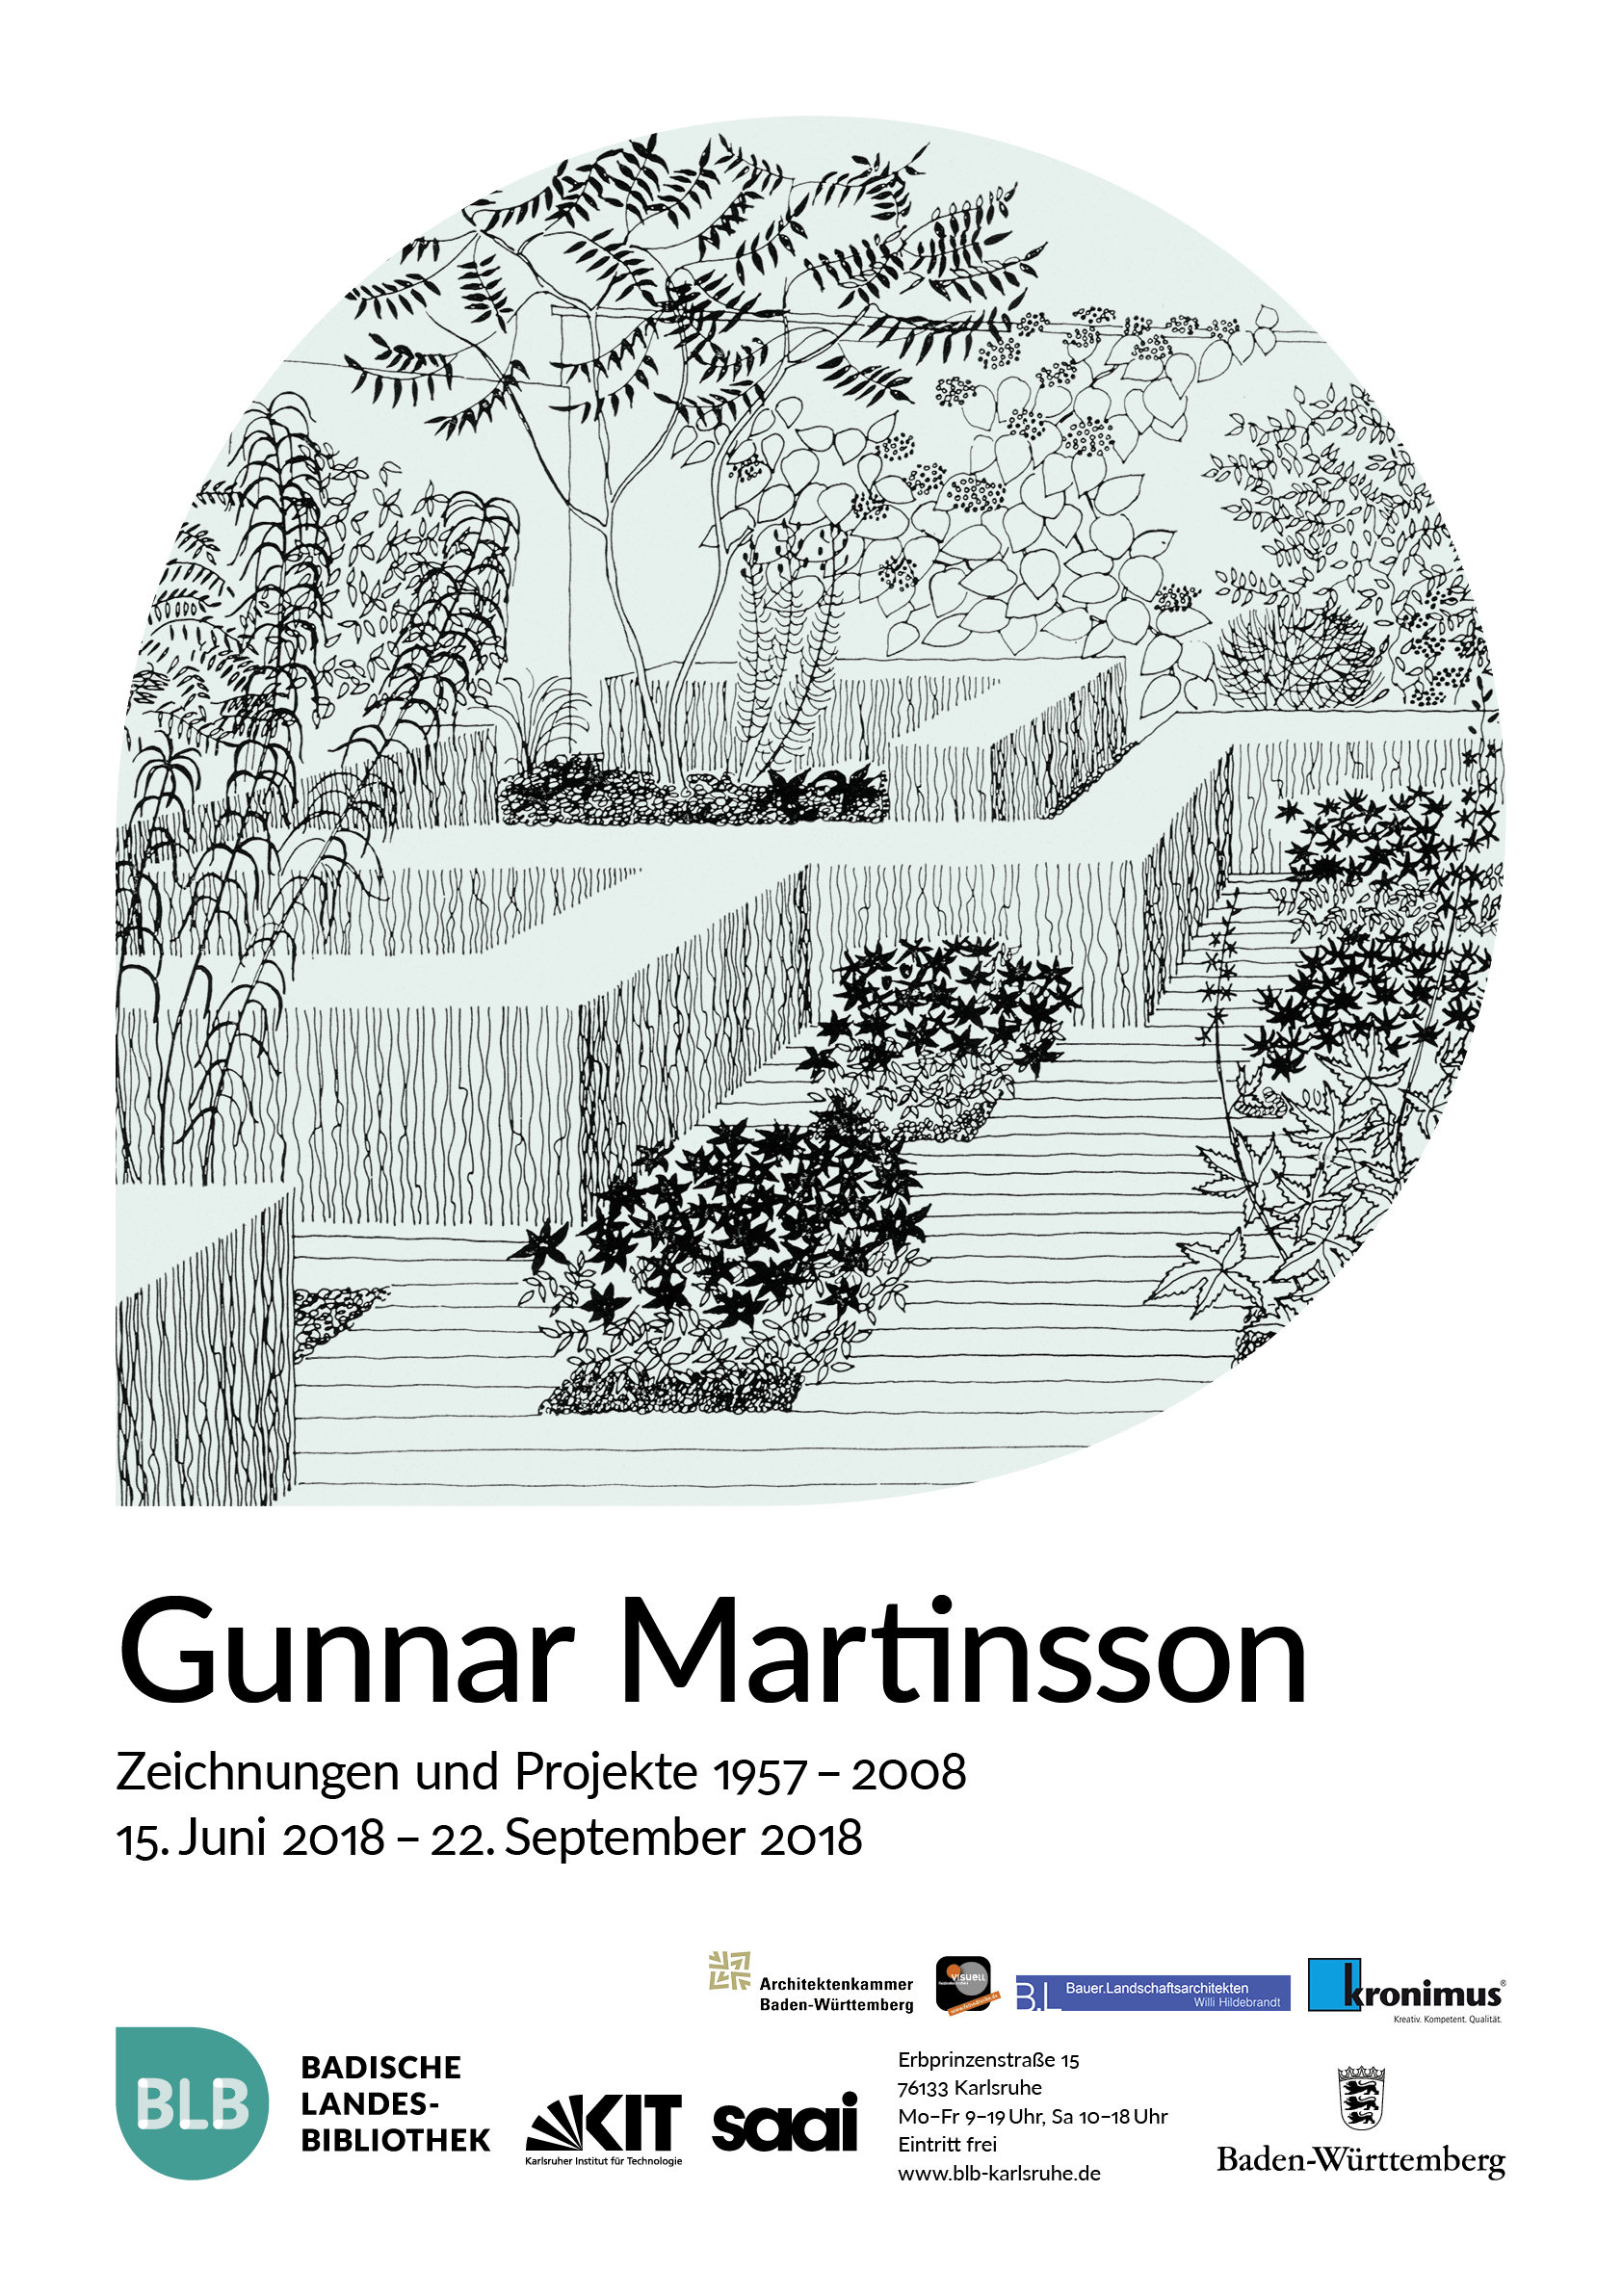 Zu sehen ist das Plakat der Ausstellung. Das Motiv zeigt eine Zeichnung von Gunnar Martinsson, welches eine Gartenlandschaft darstellt. Erweitert wird das Bild durch Informationen zur Laufzeit der Ausstellung. 